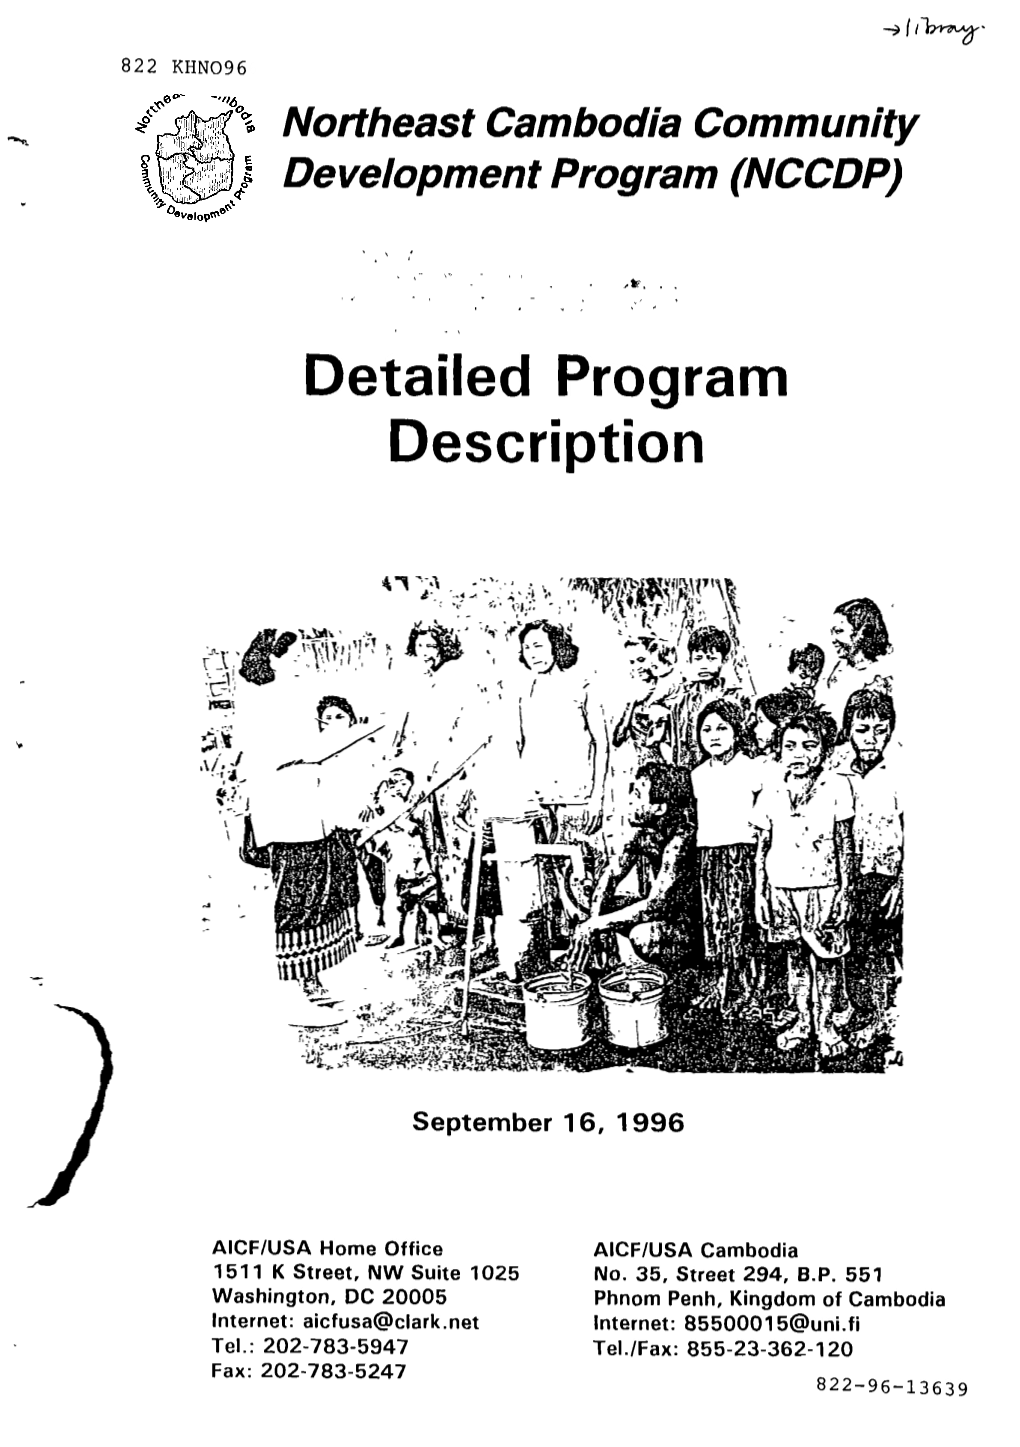 Detailed Program Description